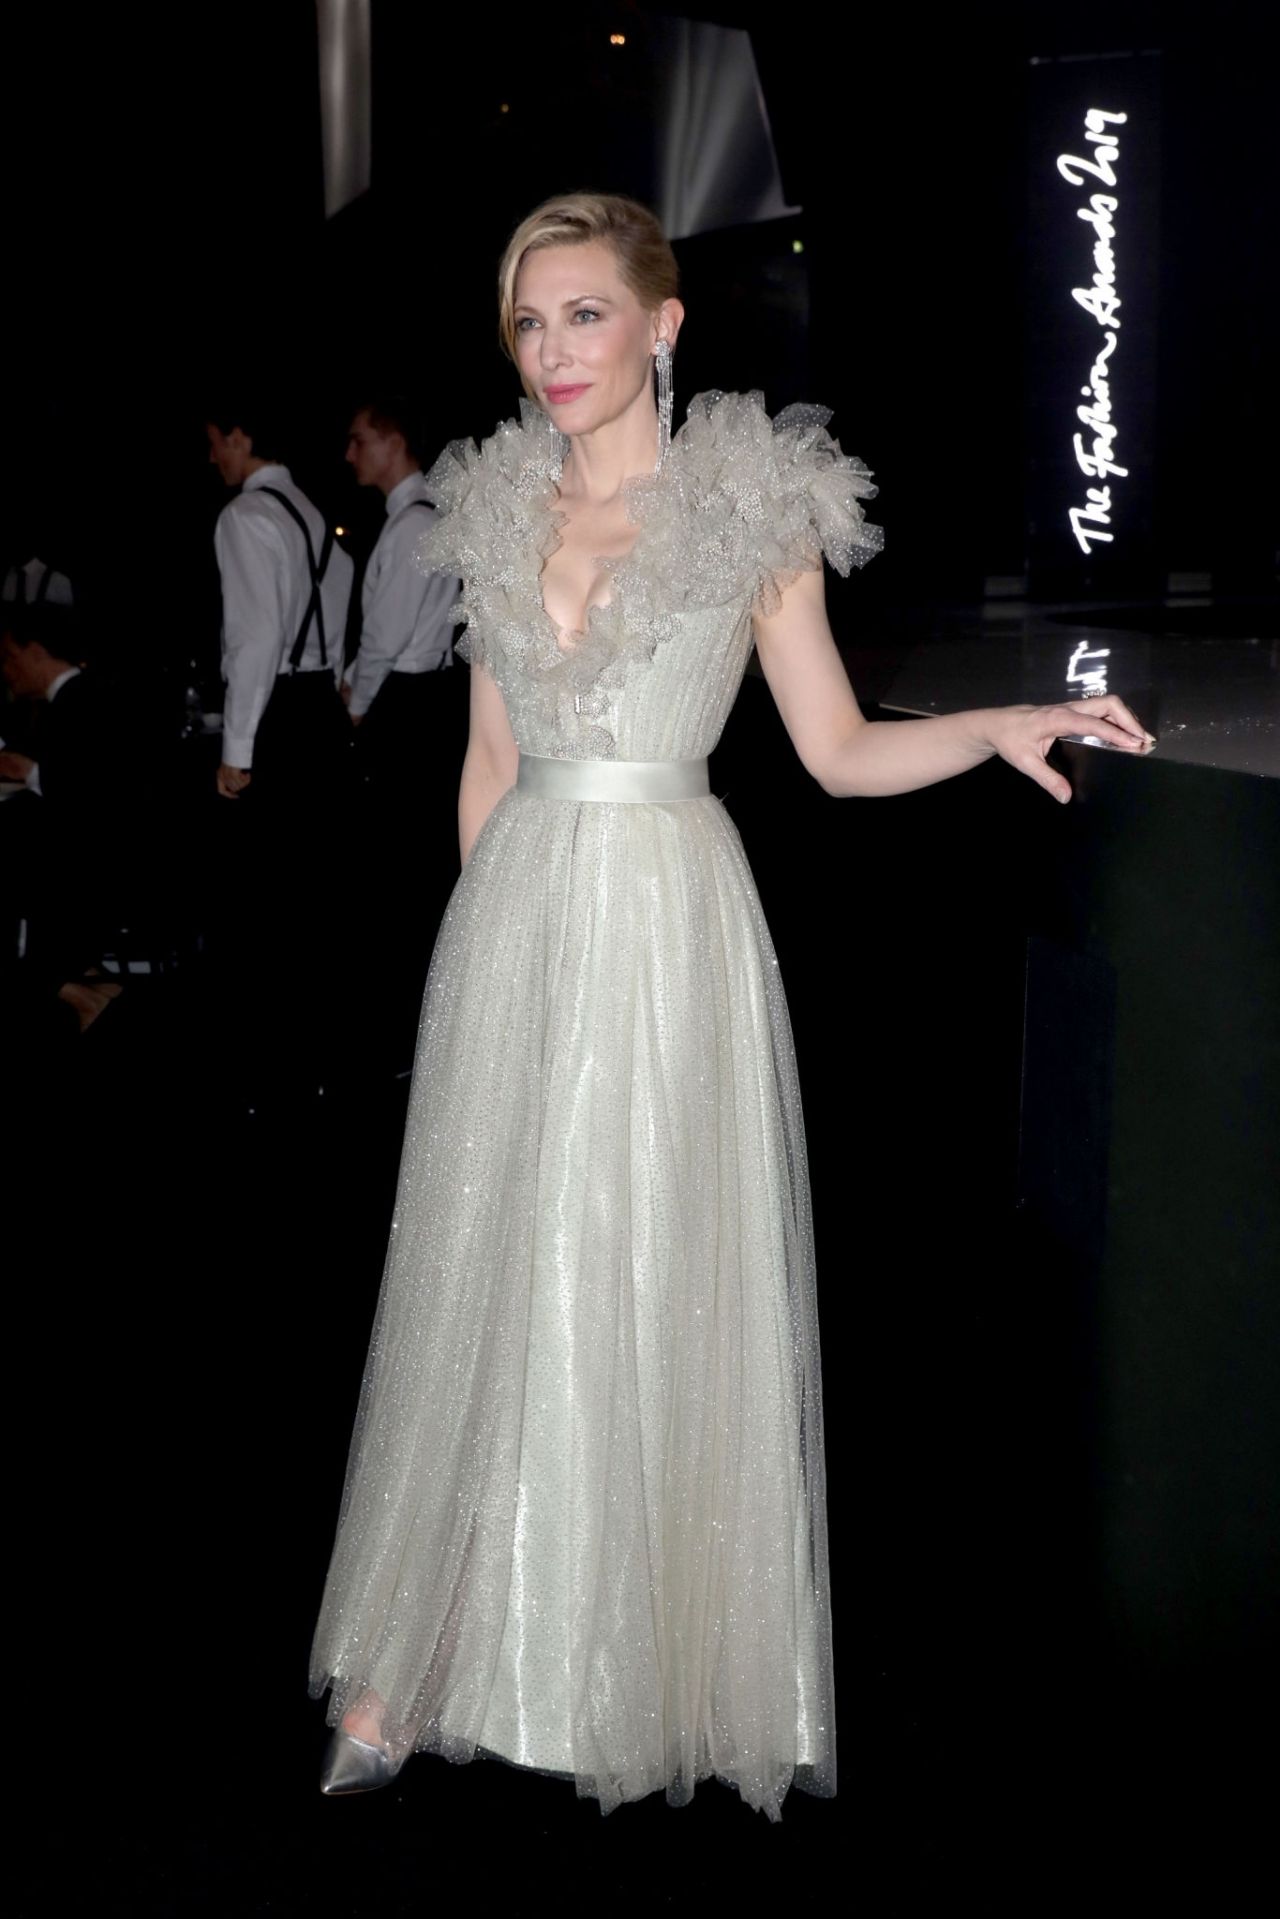 Cate Blanchett - Fashion Awards 2019 in London • CelebMafia